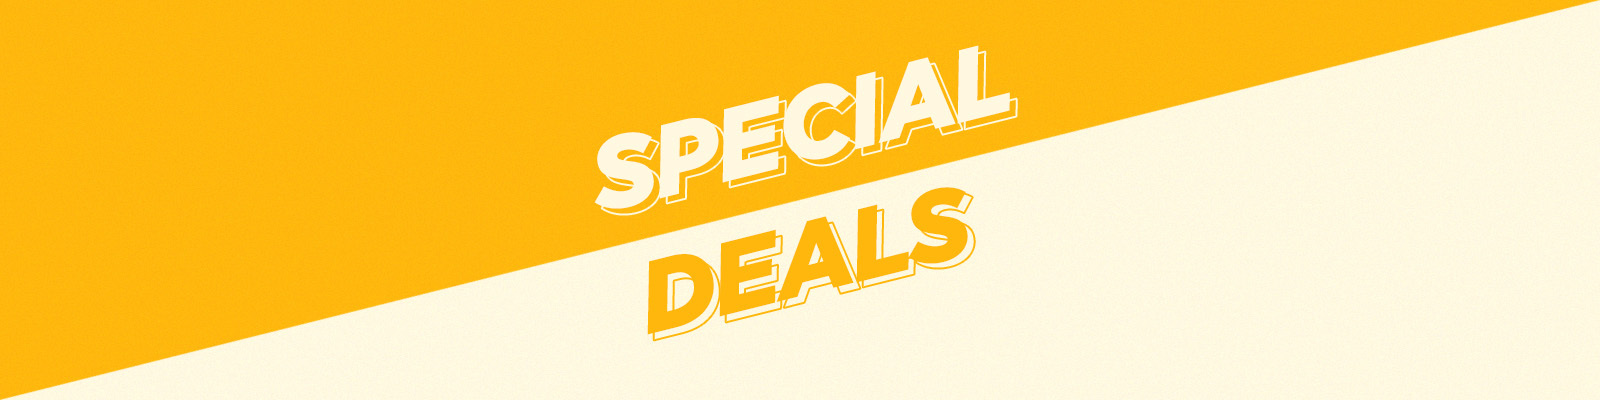 Special deals